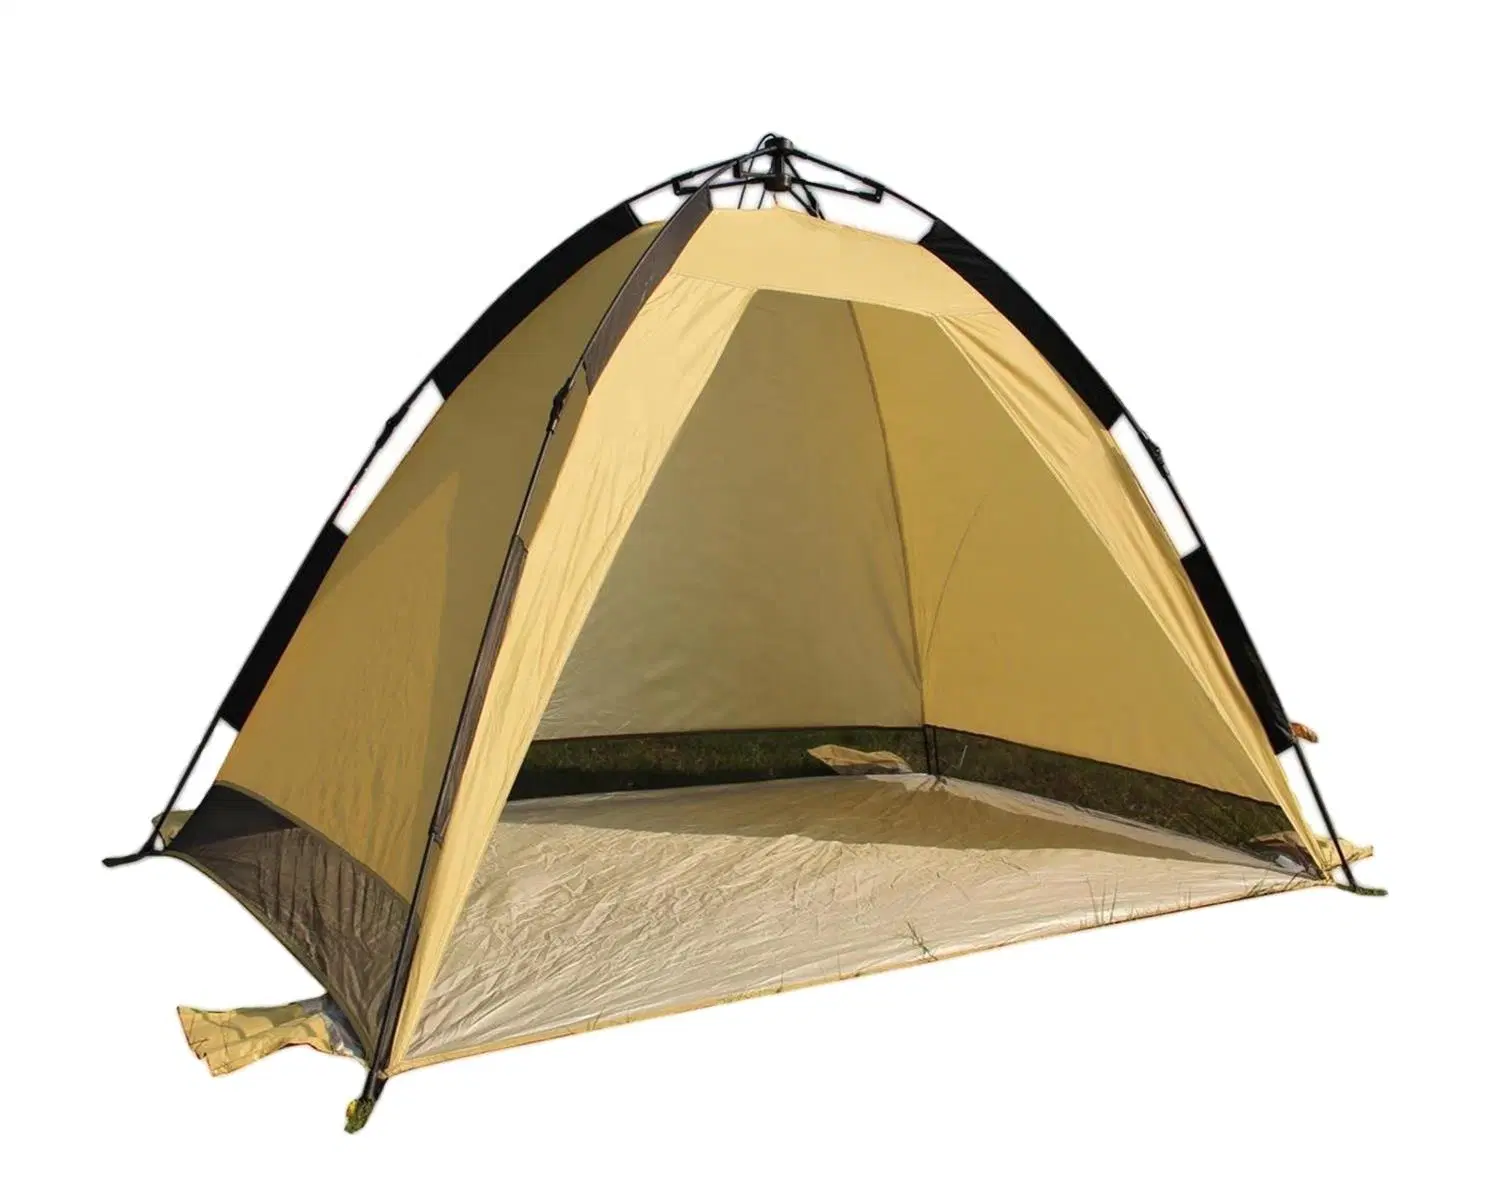 تصميم جديد مقاوم للمياه عالي الجودة لشخصين قابل للطي تلقائي خيمة تخييم مفتوحة في الهواء الطلق